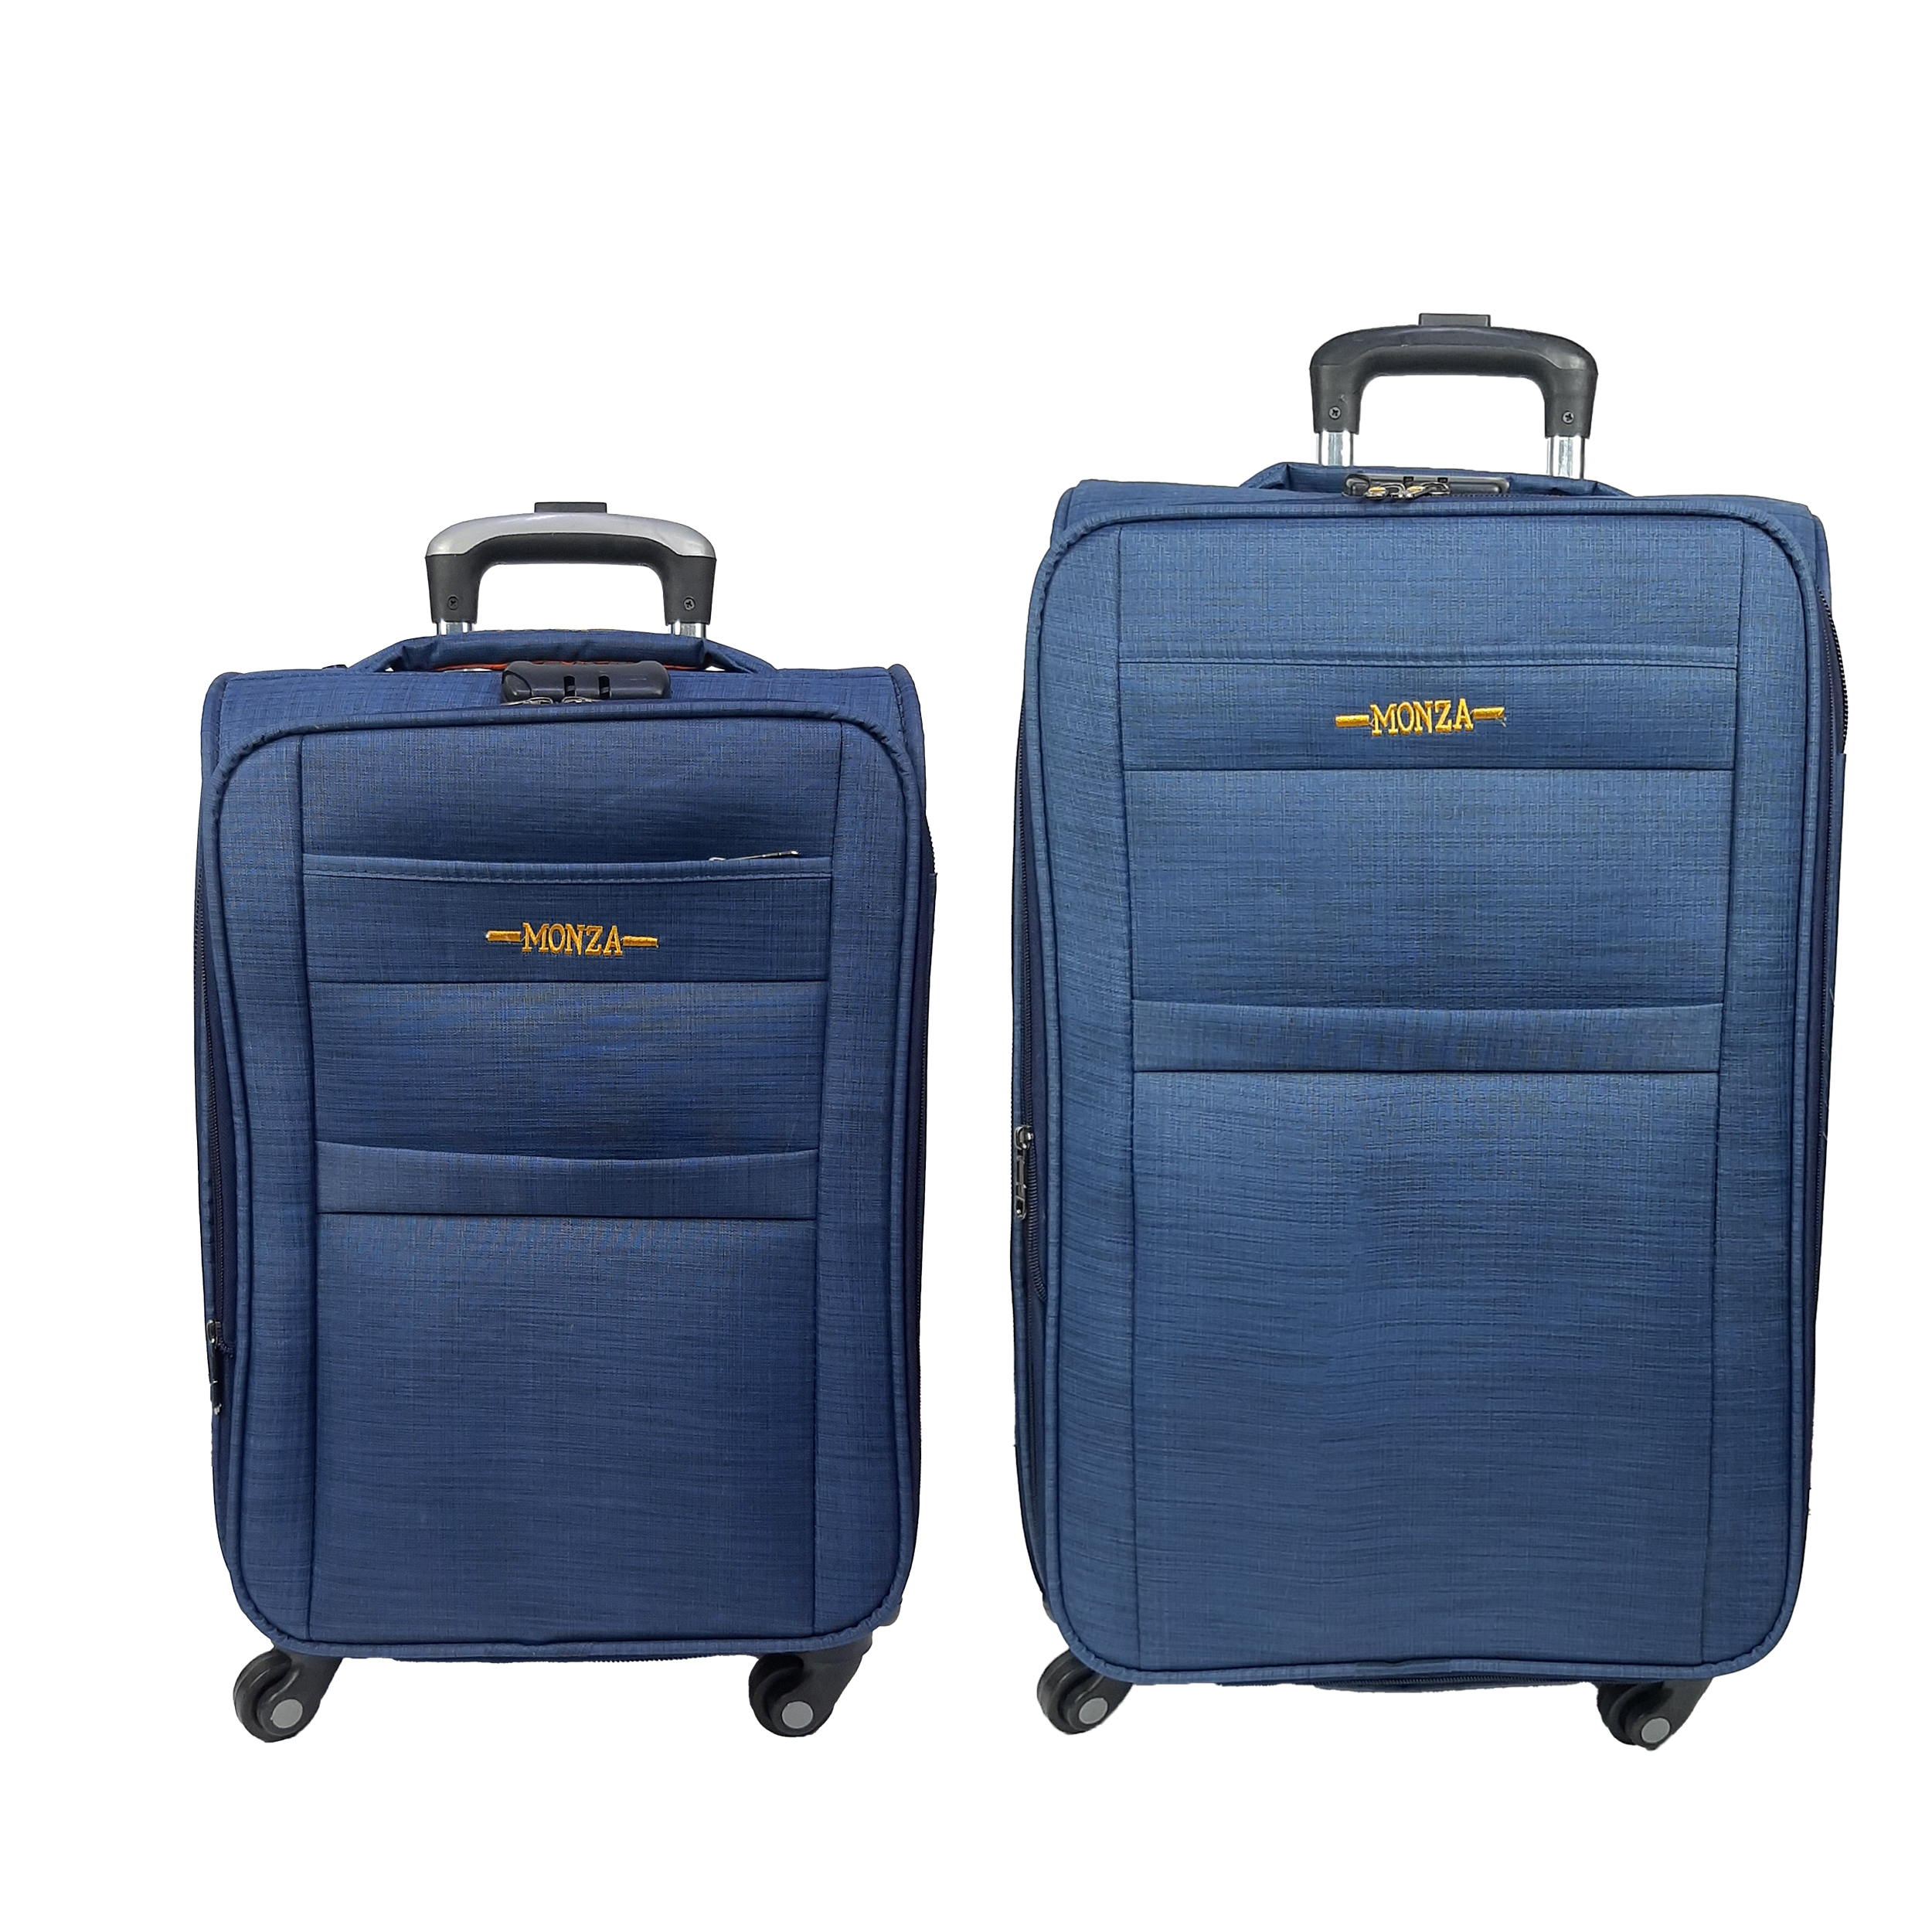 نکته خرید - قیمت روز مجموعه دو عددی چمدان مونزا مدل J3050 خرید